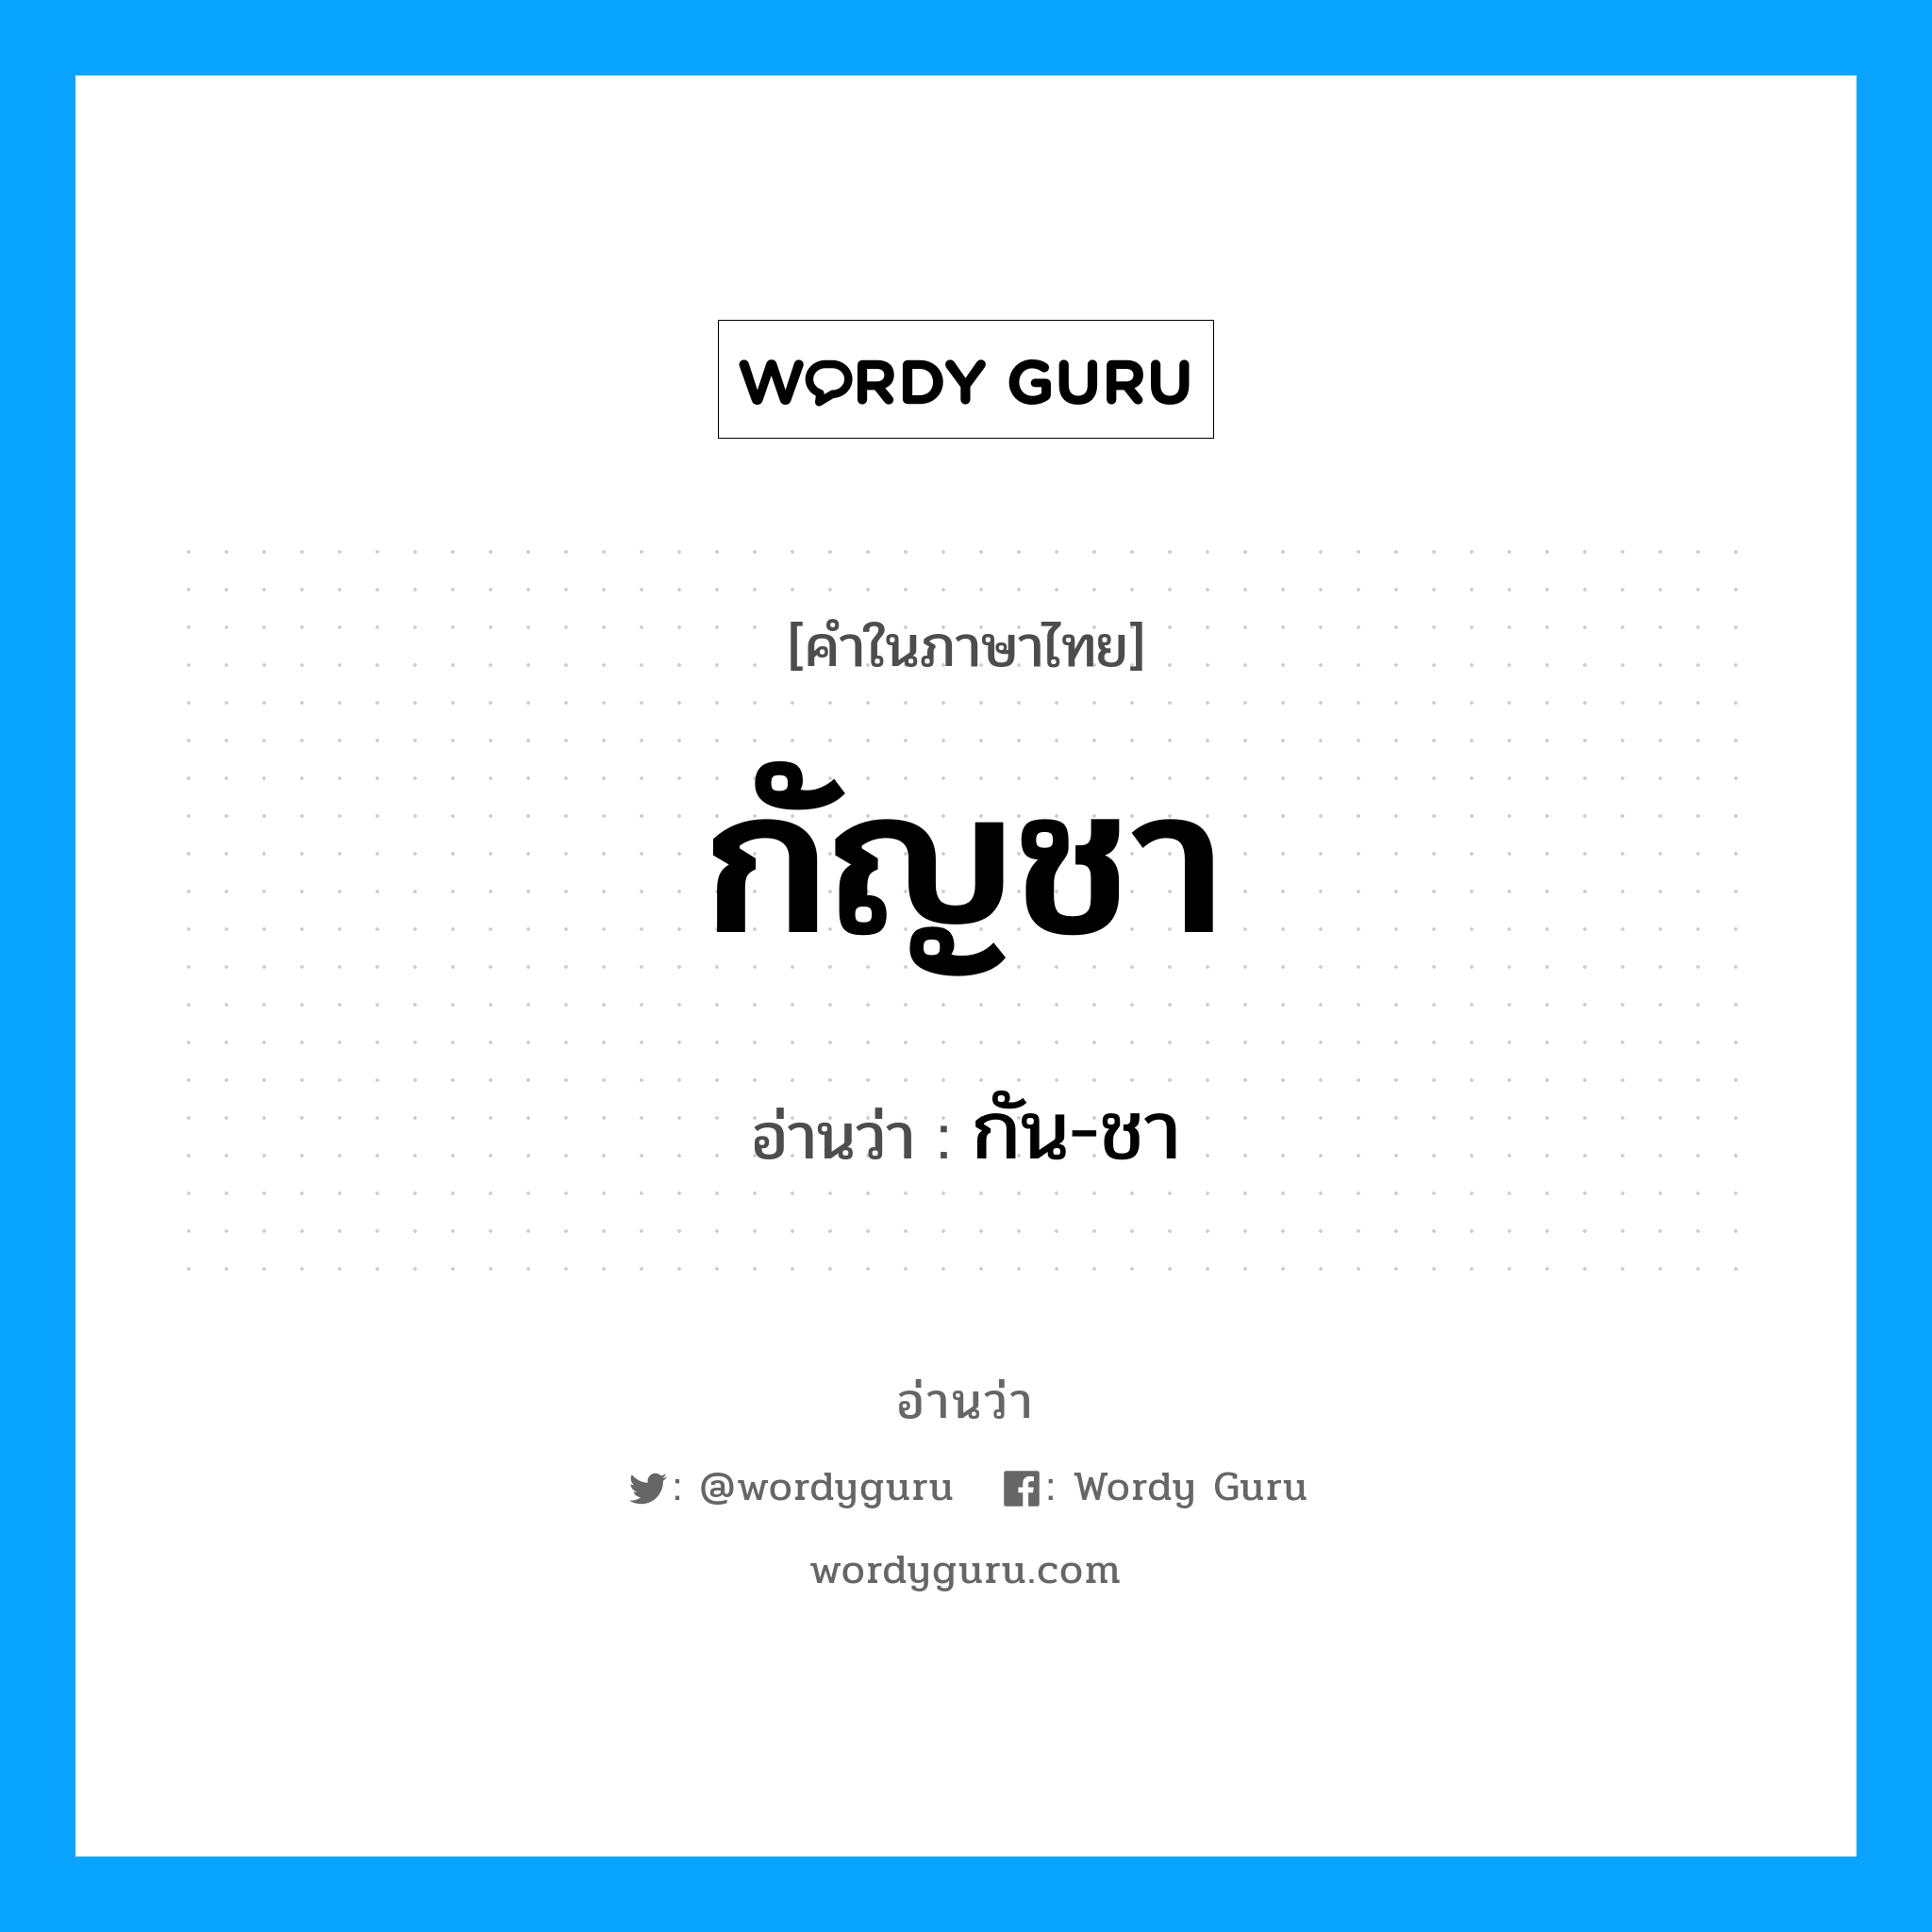 กัน-ชา เป็นคำอ่านของคำไหน?, คำในภาษาไทย กัน-ชา อ่านว่า กัญชา